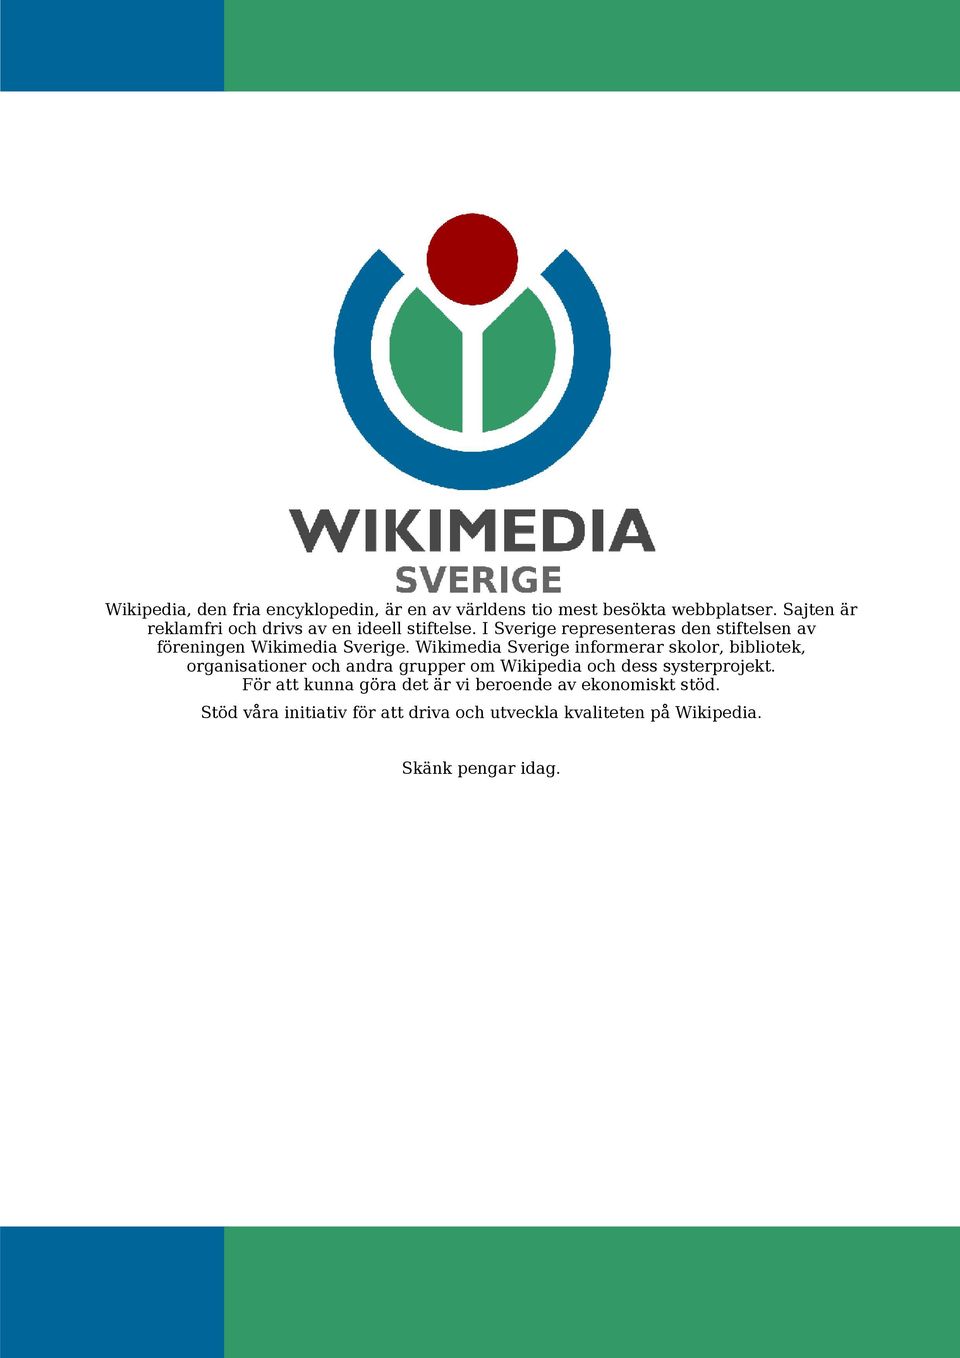 I Sverige representeras den stiftelsen av föreningen Wikimedia Sverige.